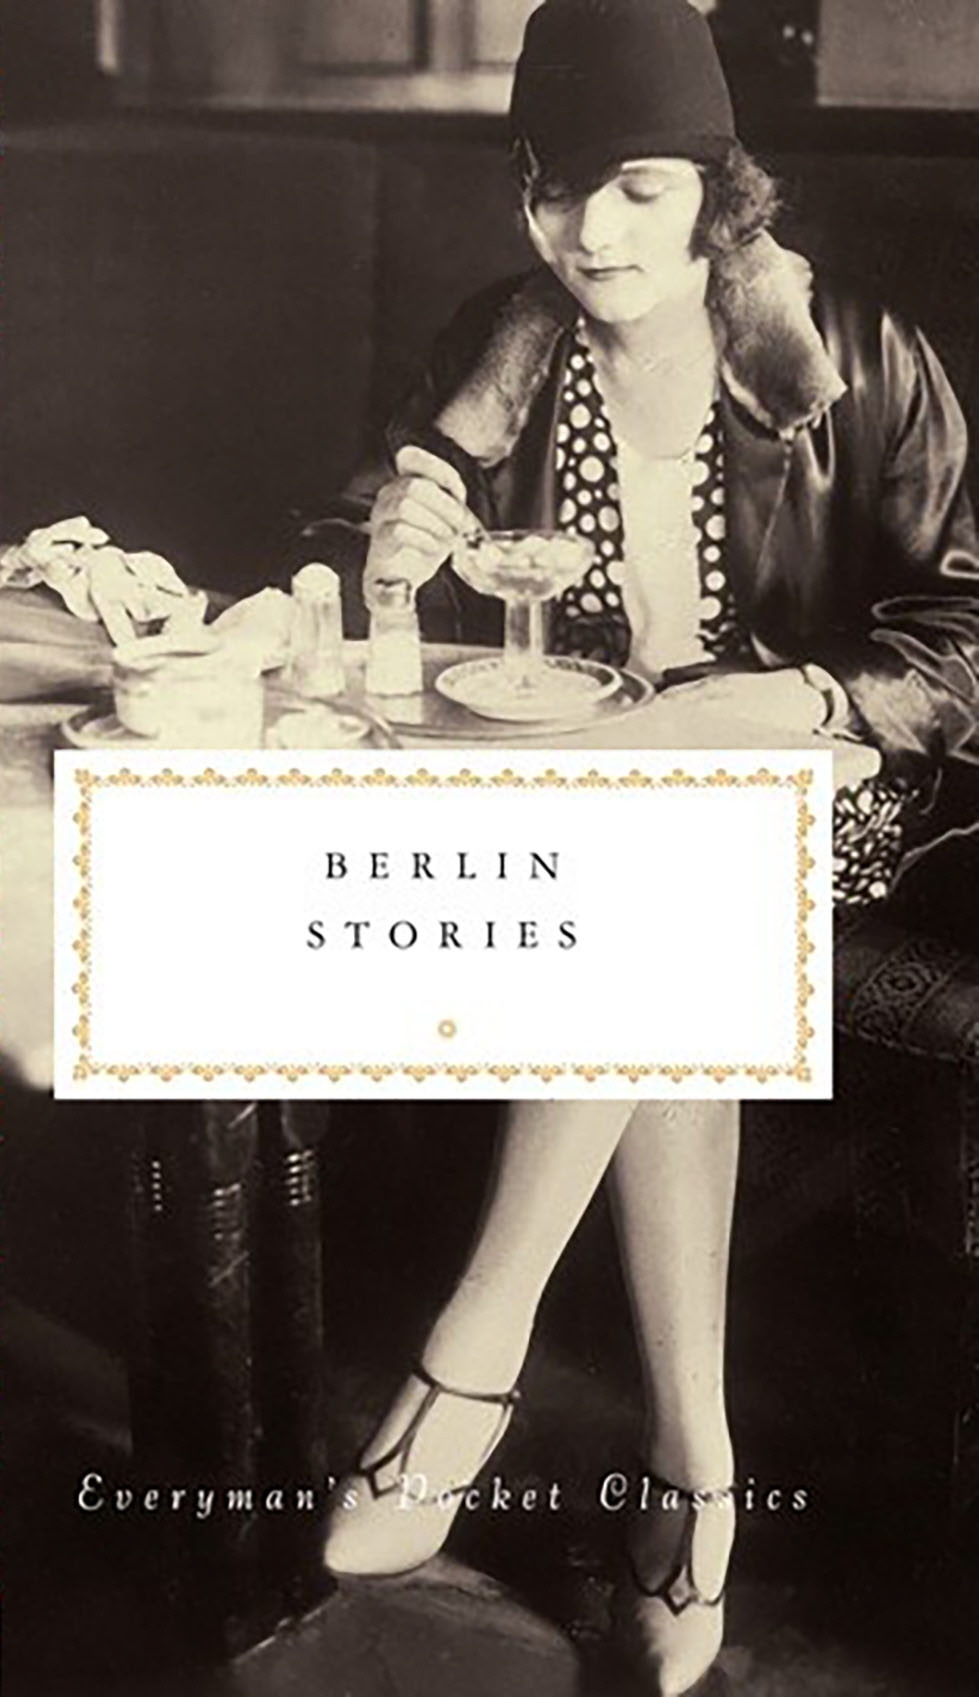 Book “Berlin Stories” by Philip Hensher — October 10, 2019